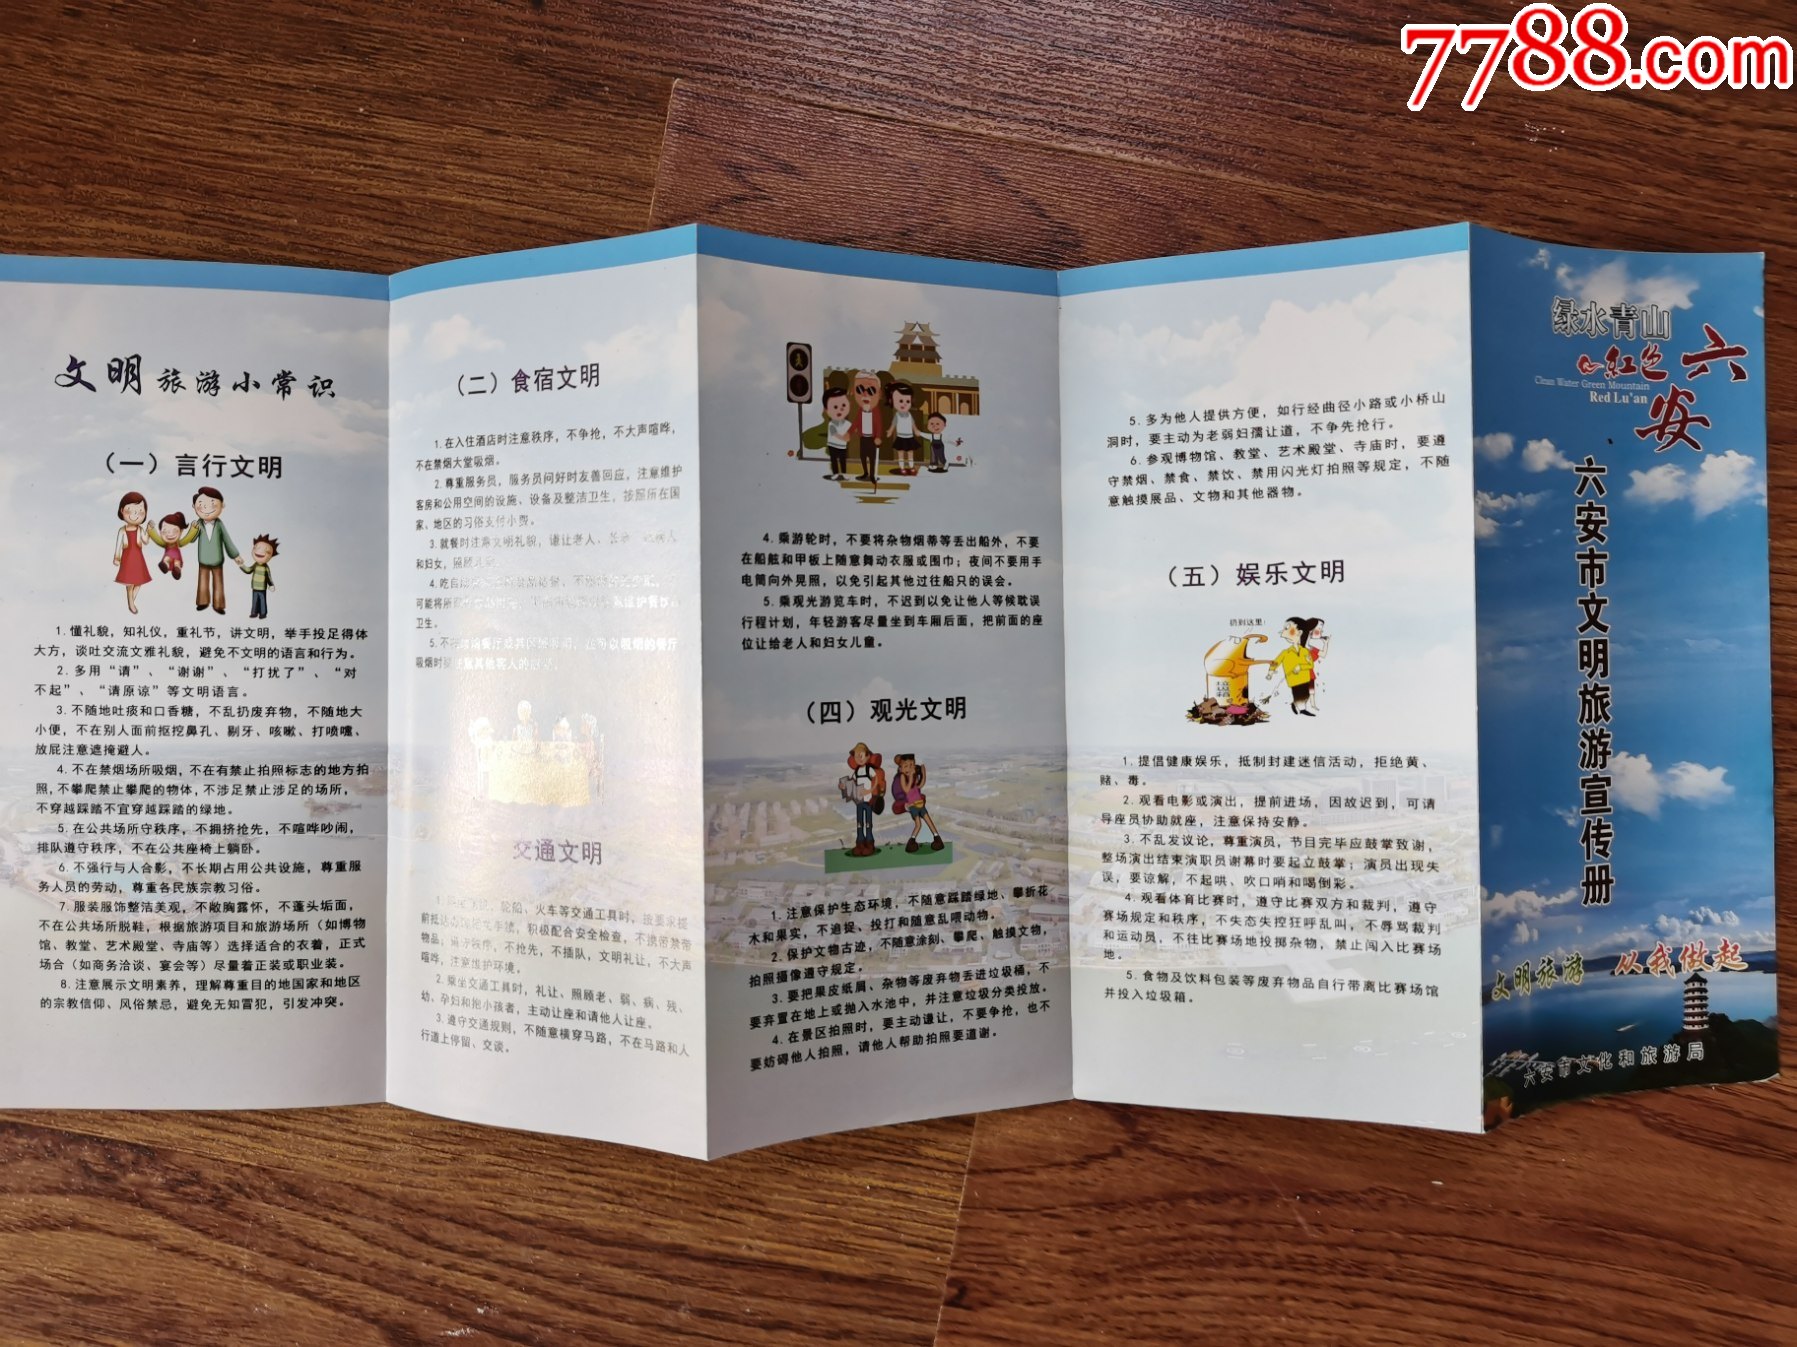 六安市文明旅游宣传册